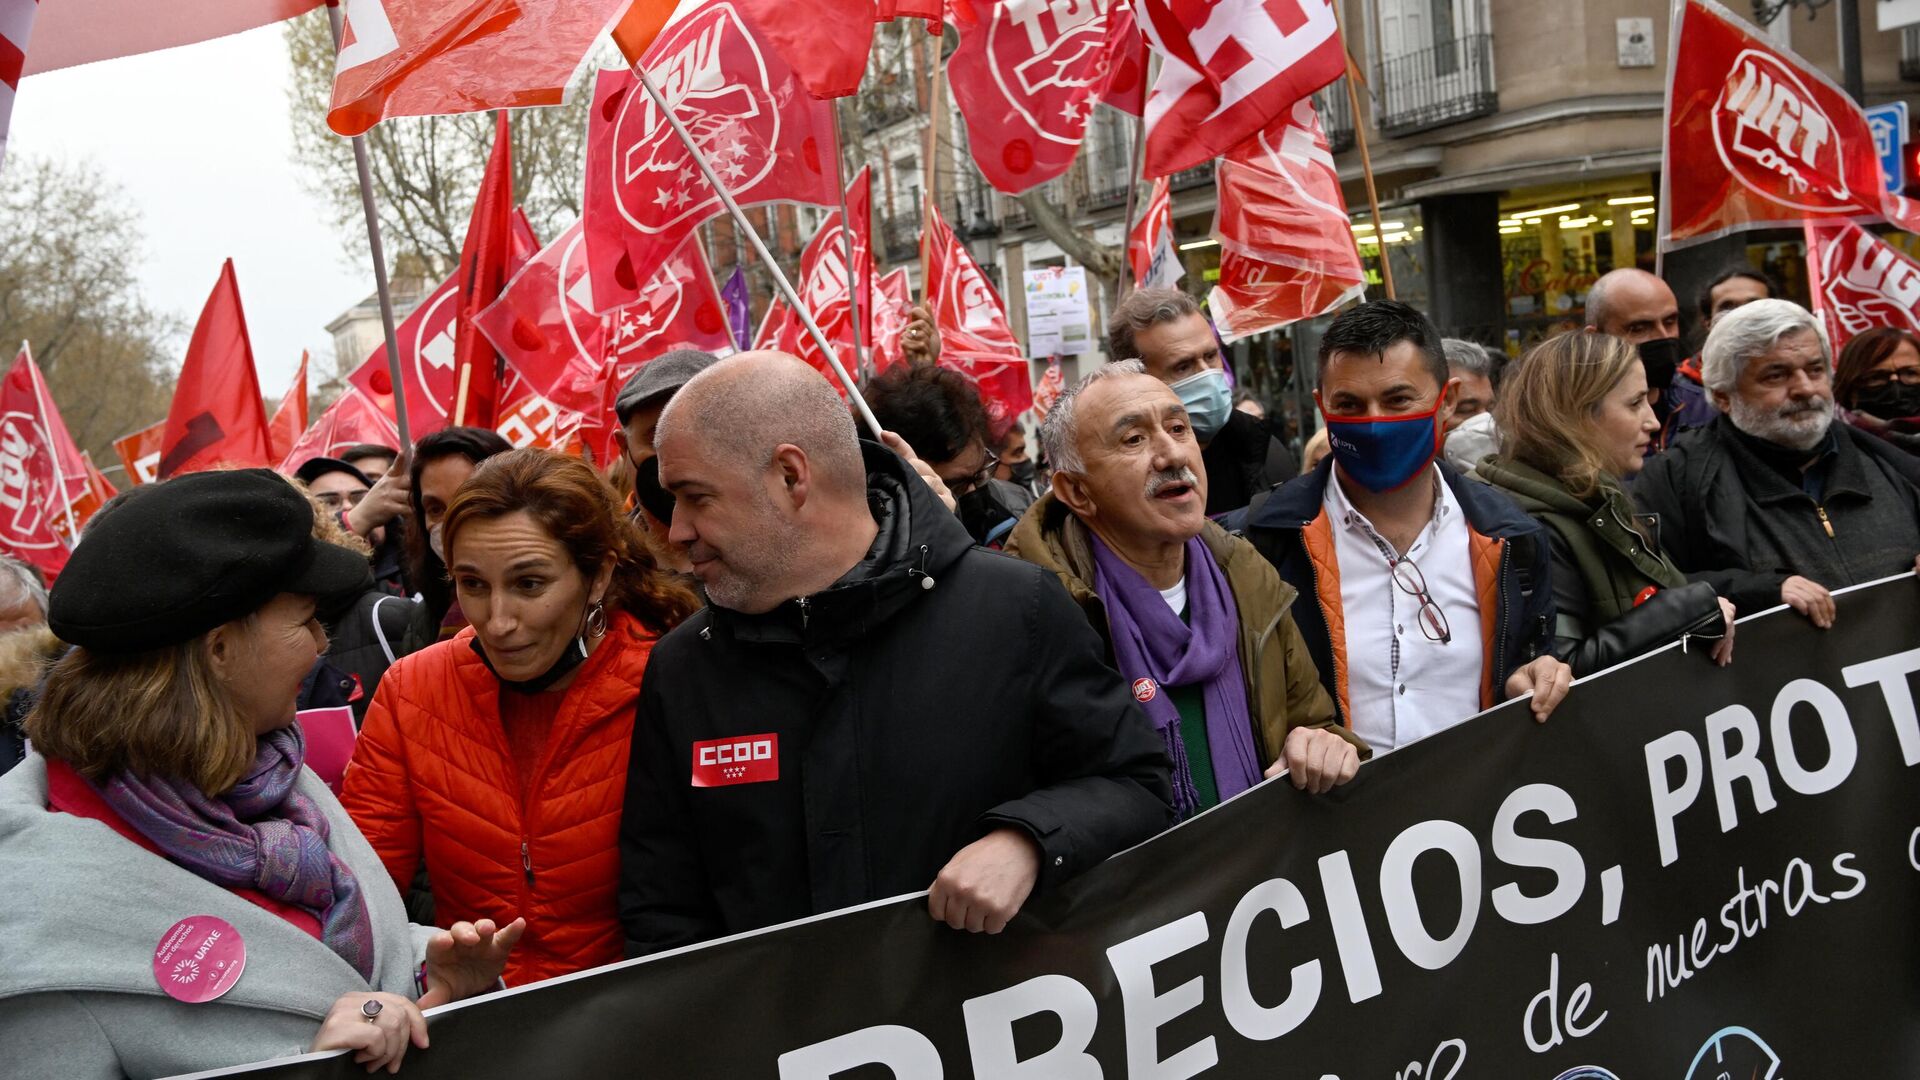 Акция протеста в Мадриде против роста цен на продукты, топливо и другие товары, 23 марта 2022 года  - Sputnik Латвия, 1920, 25.03.2022